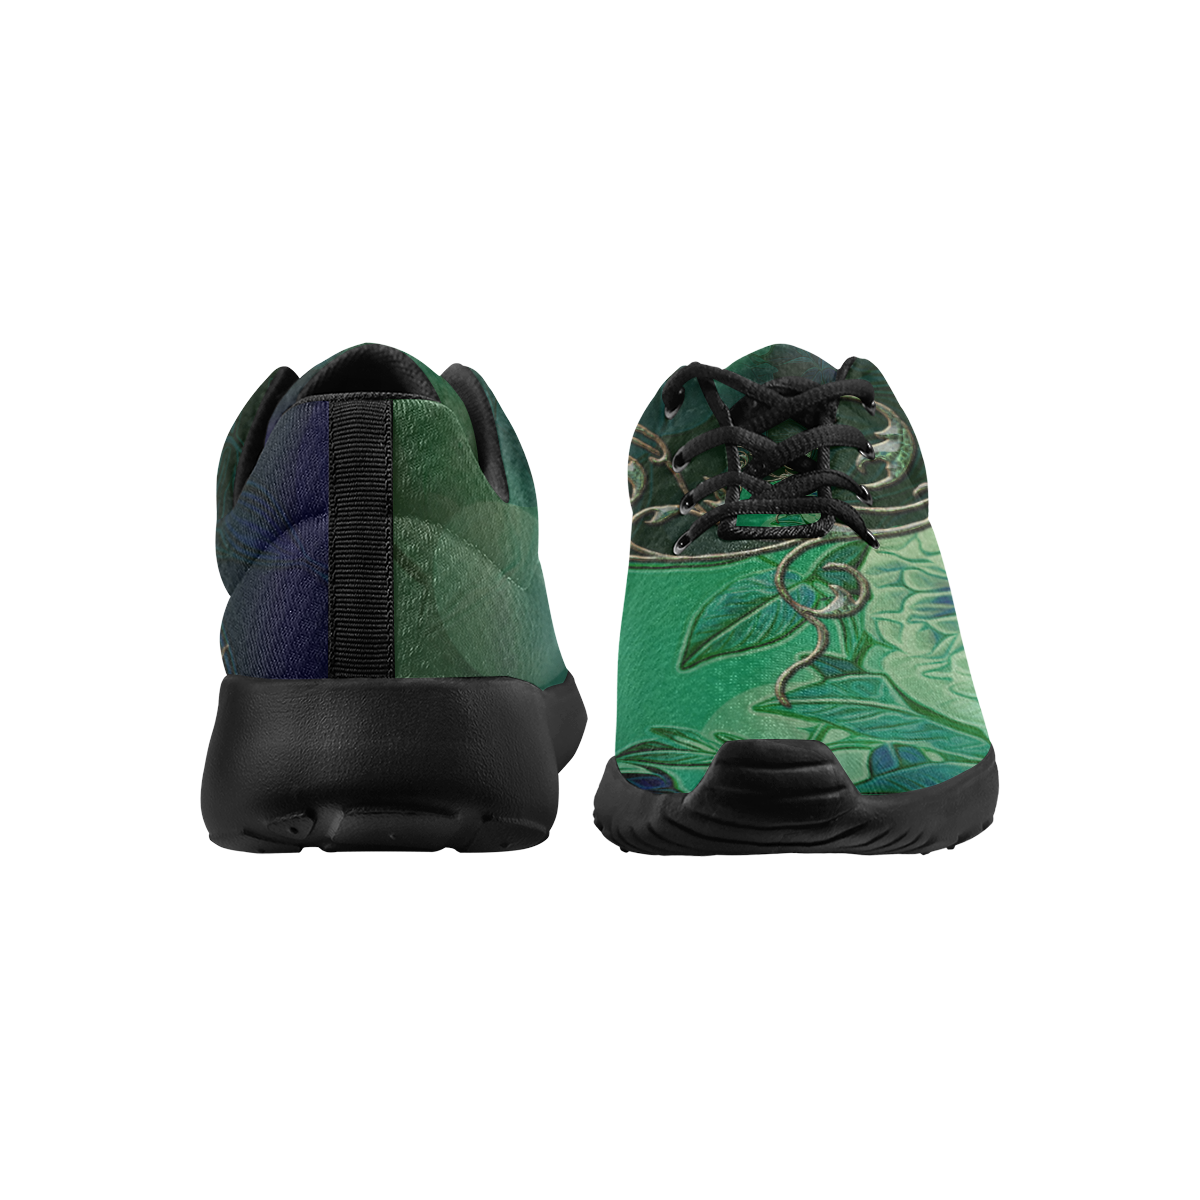 Green floral design Men's Athletic Shoes (Model 0200)